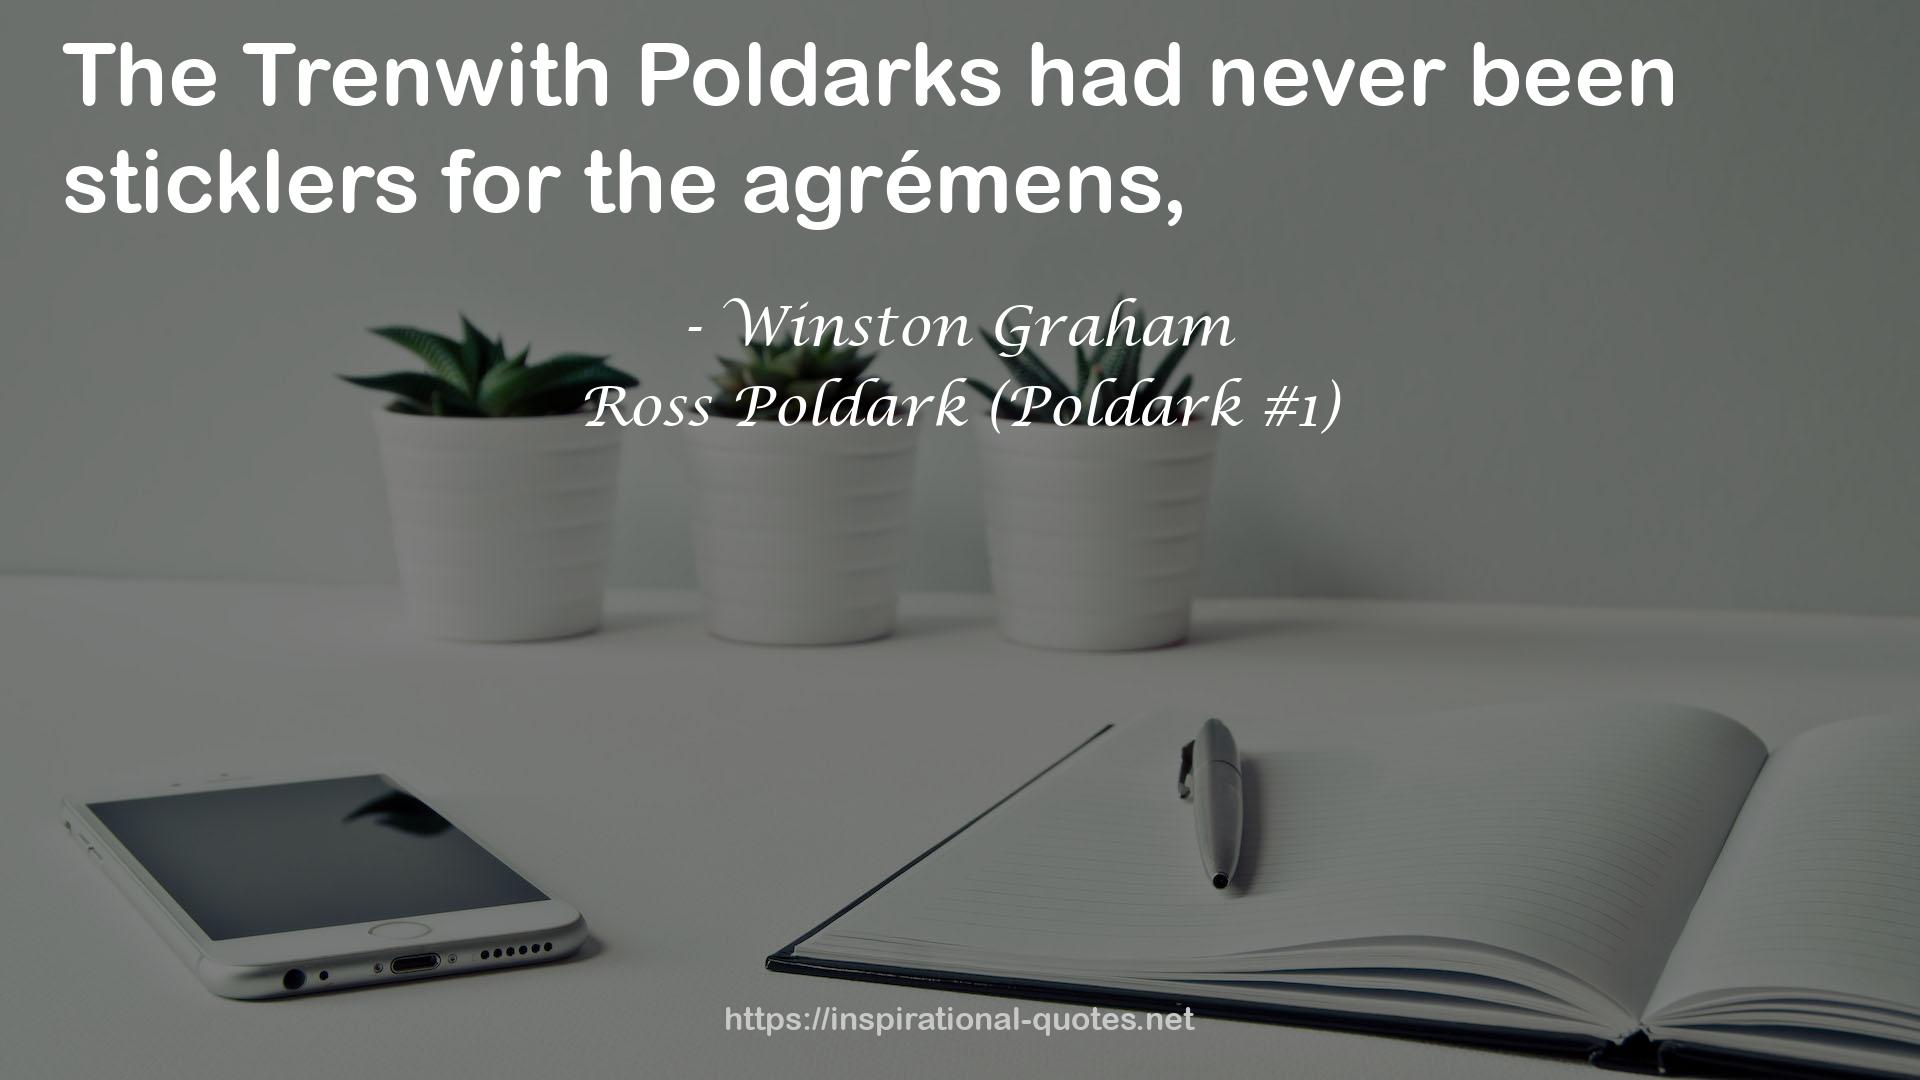 Ross Poldark (Poldark #1) QUOTES